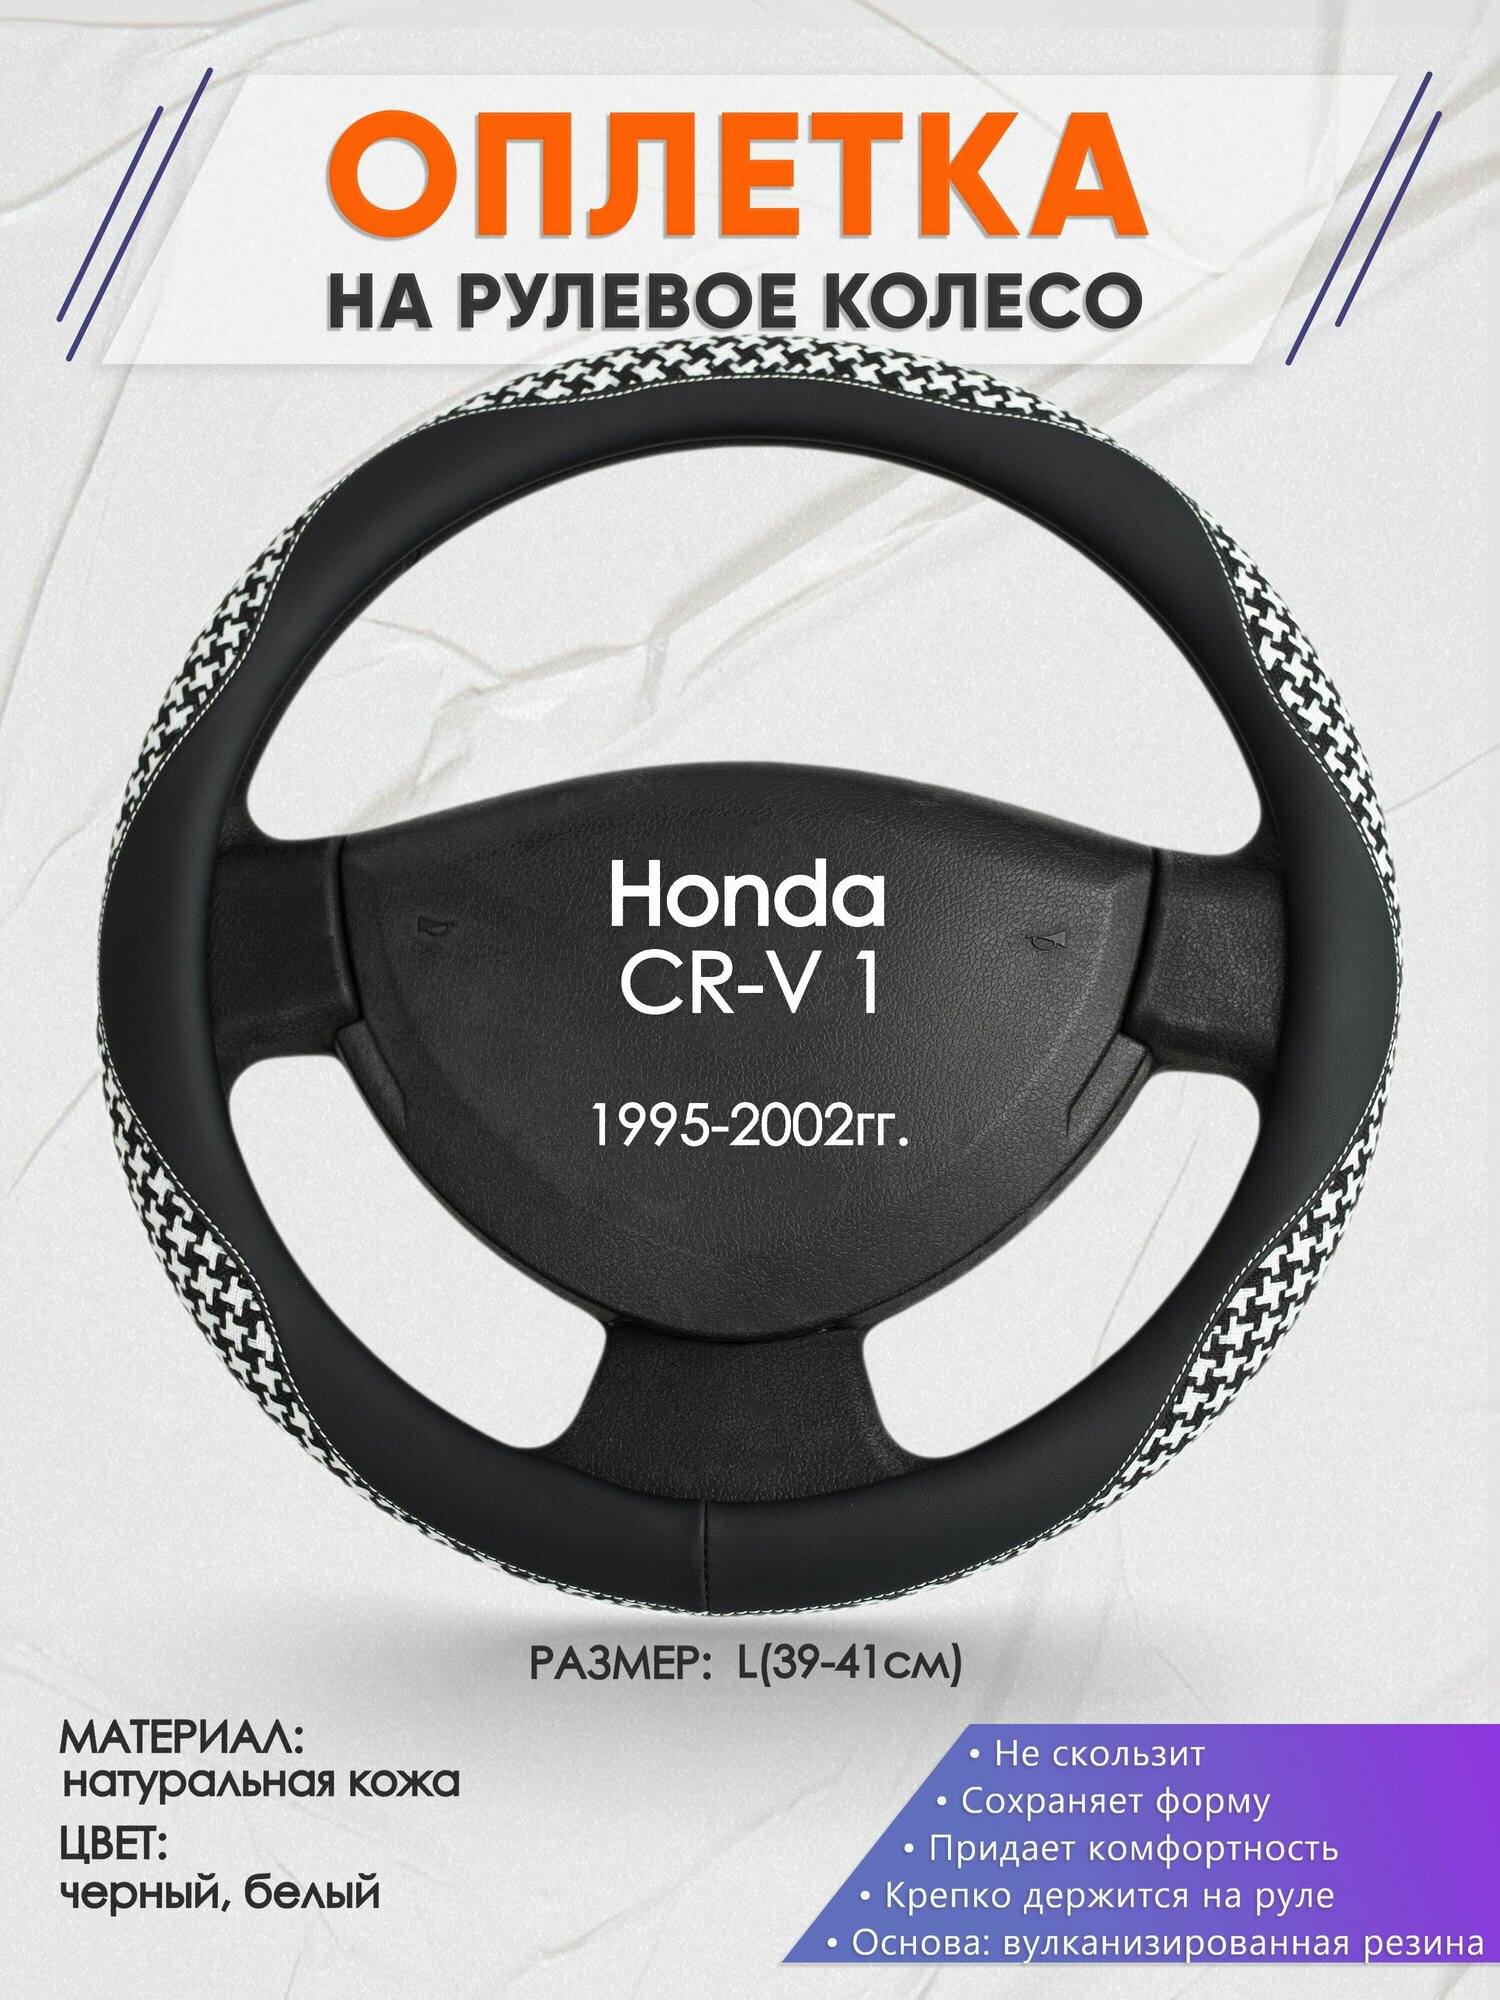 Оплетка на руль для Honda CR-V 1(Хонда срв 1) 1995-2002, L(39-41см), Натуральная кожа 21